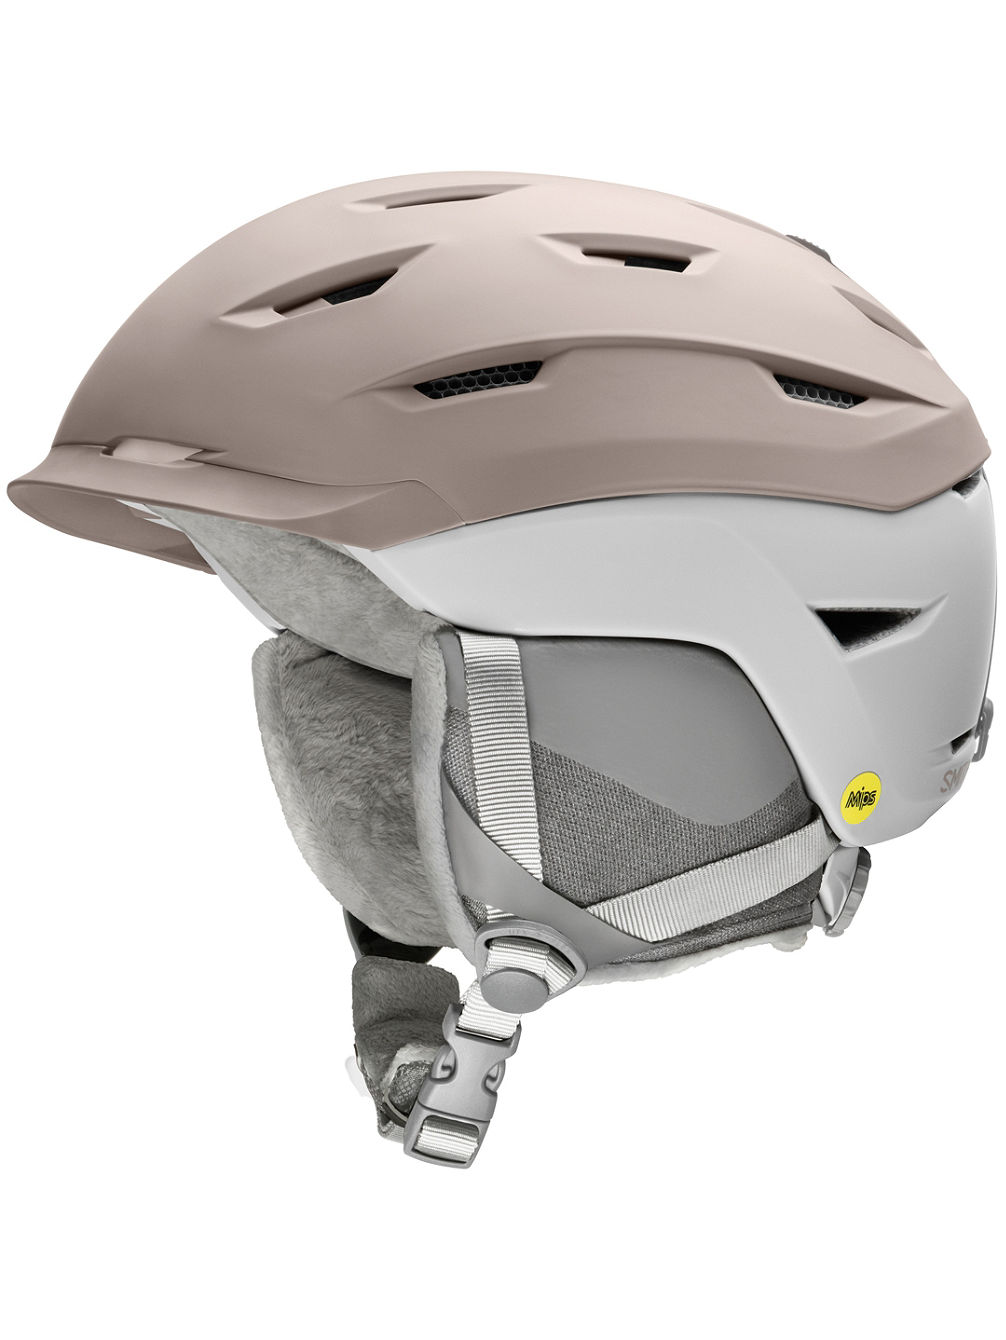 Liberty MIPS Helmet